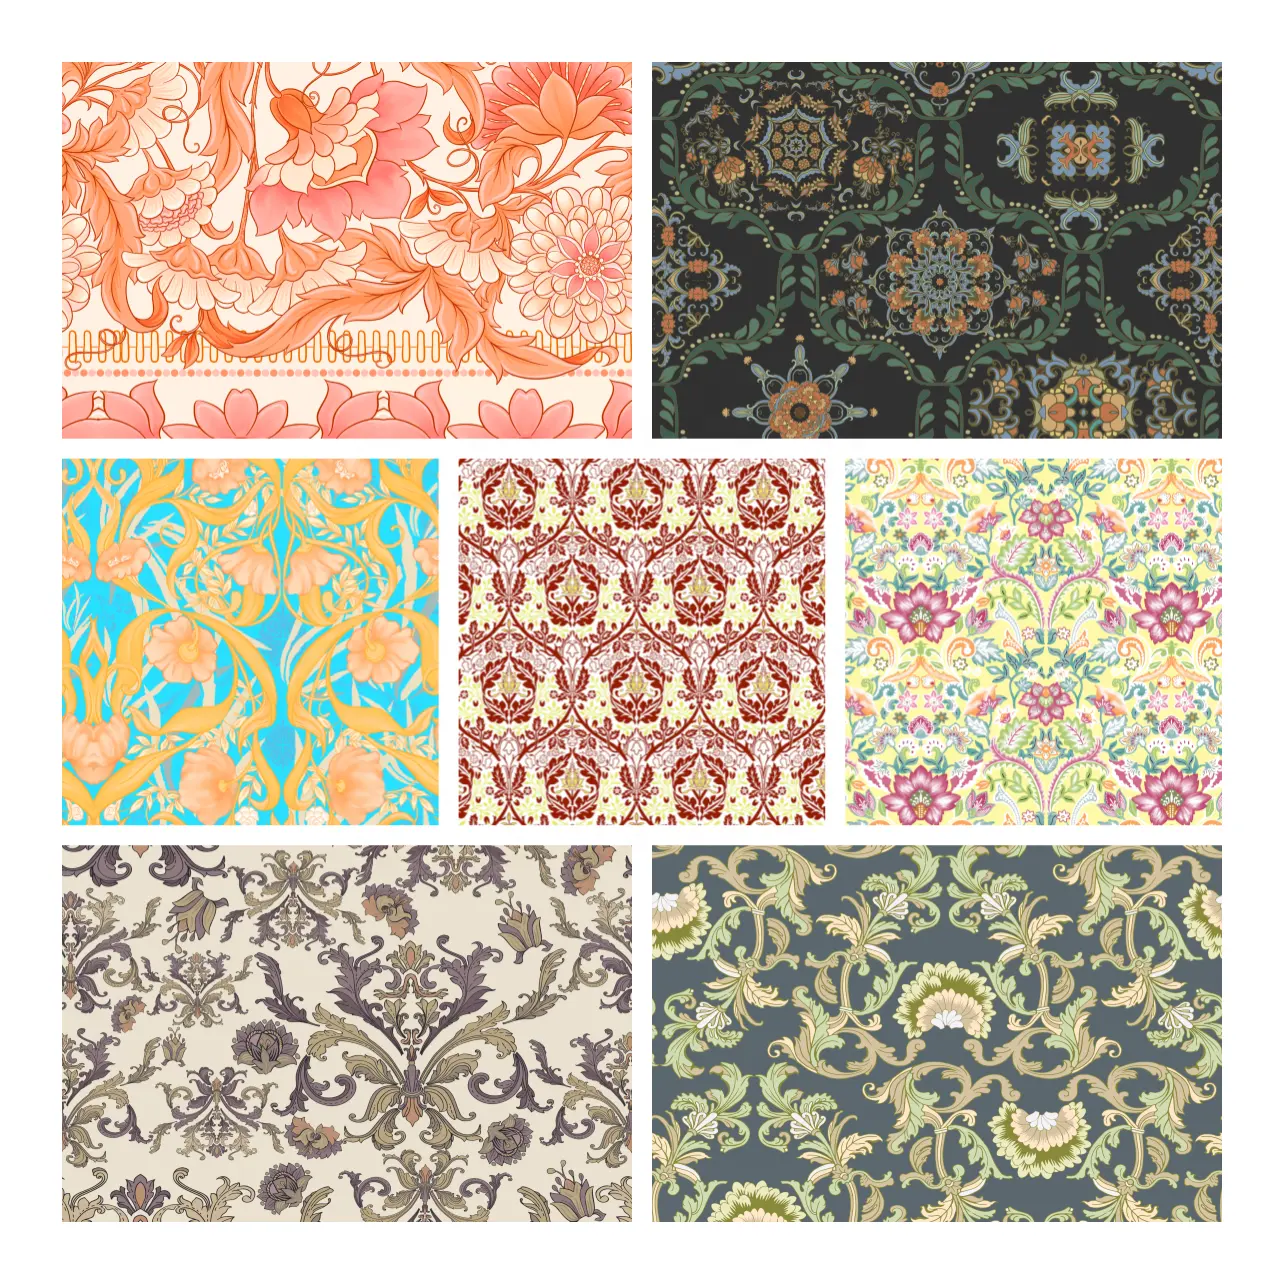 Designerdruck chinesisches Muster Boho floral digital gedruckter Polsterstoff Baumwolle für den Haushalt Textil Deco